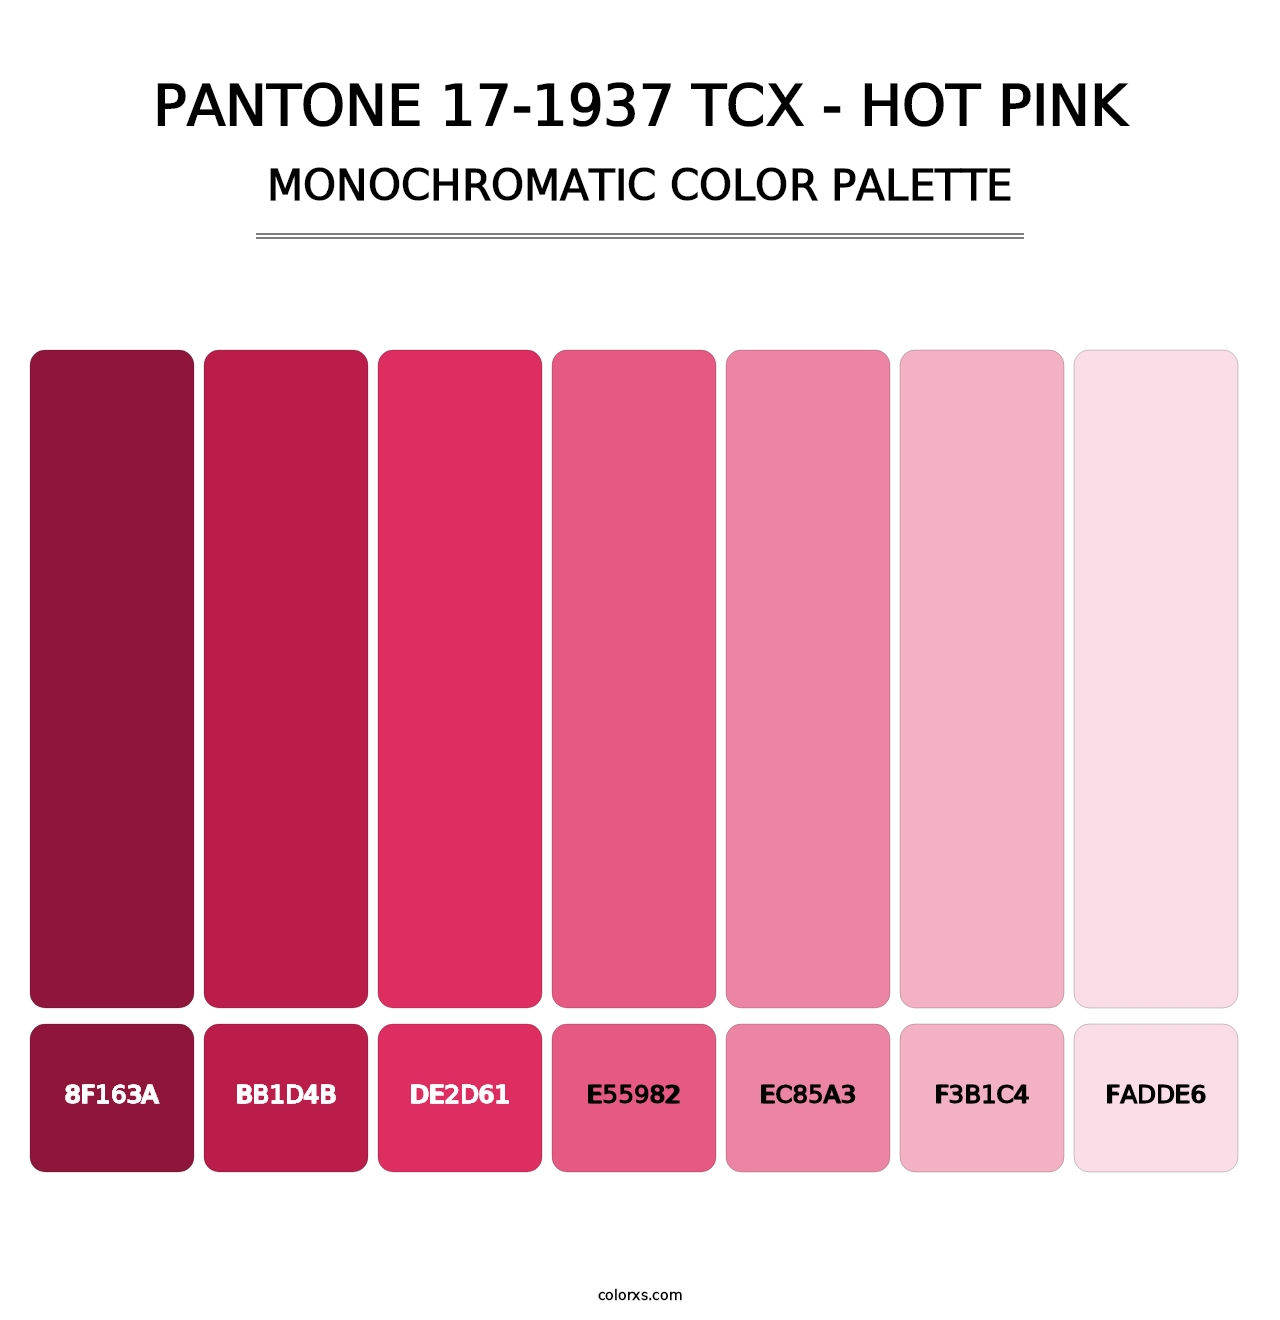 PANTONE 17-1937 TCX - Hot Pink - Monochromatic Color Palette